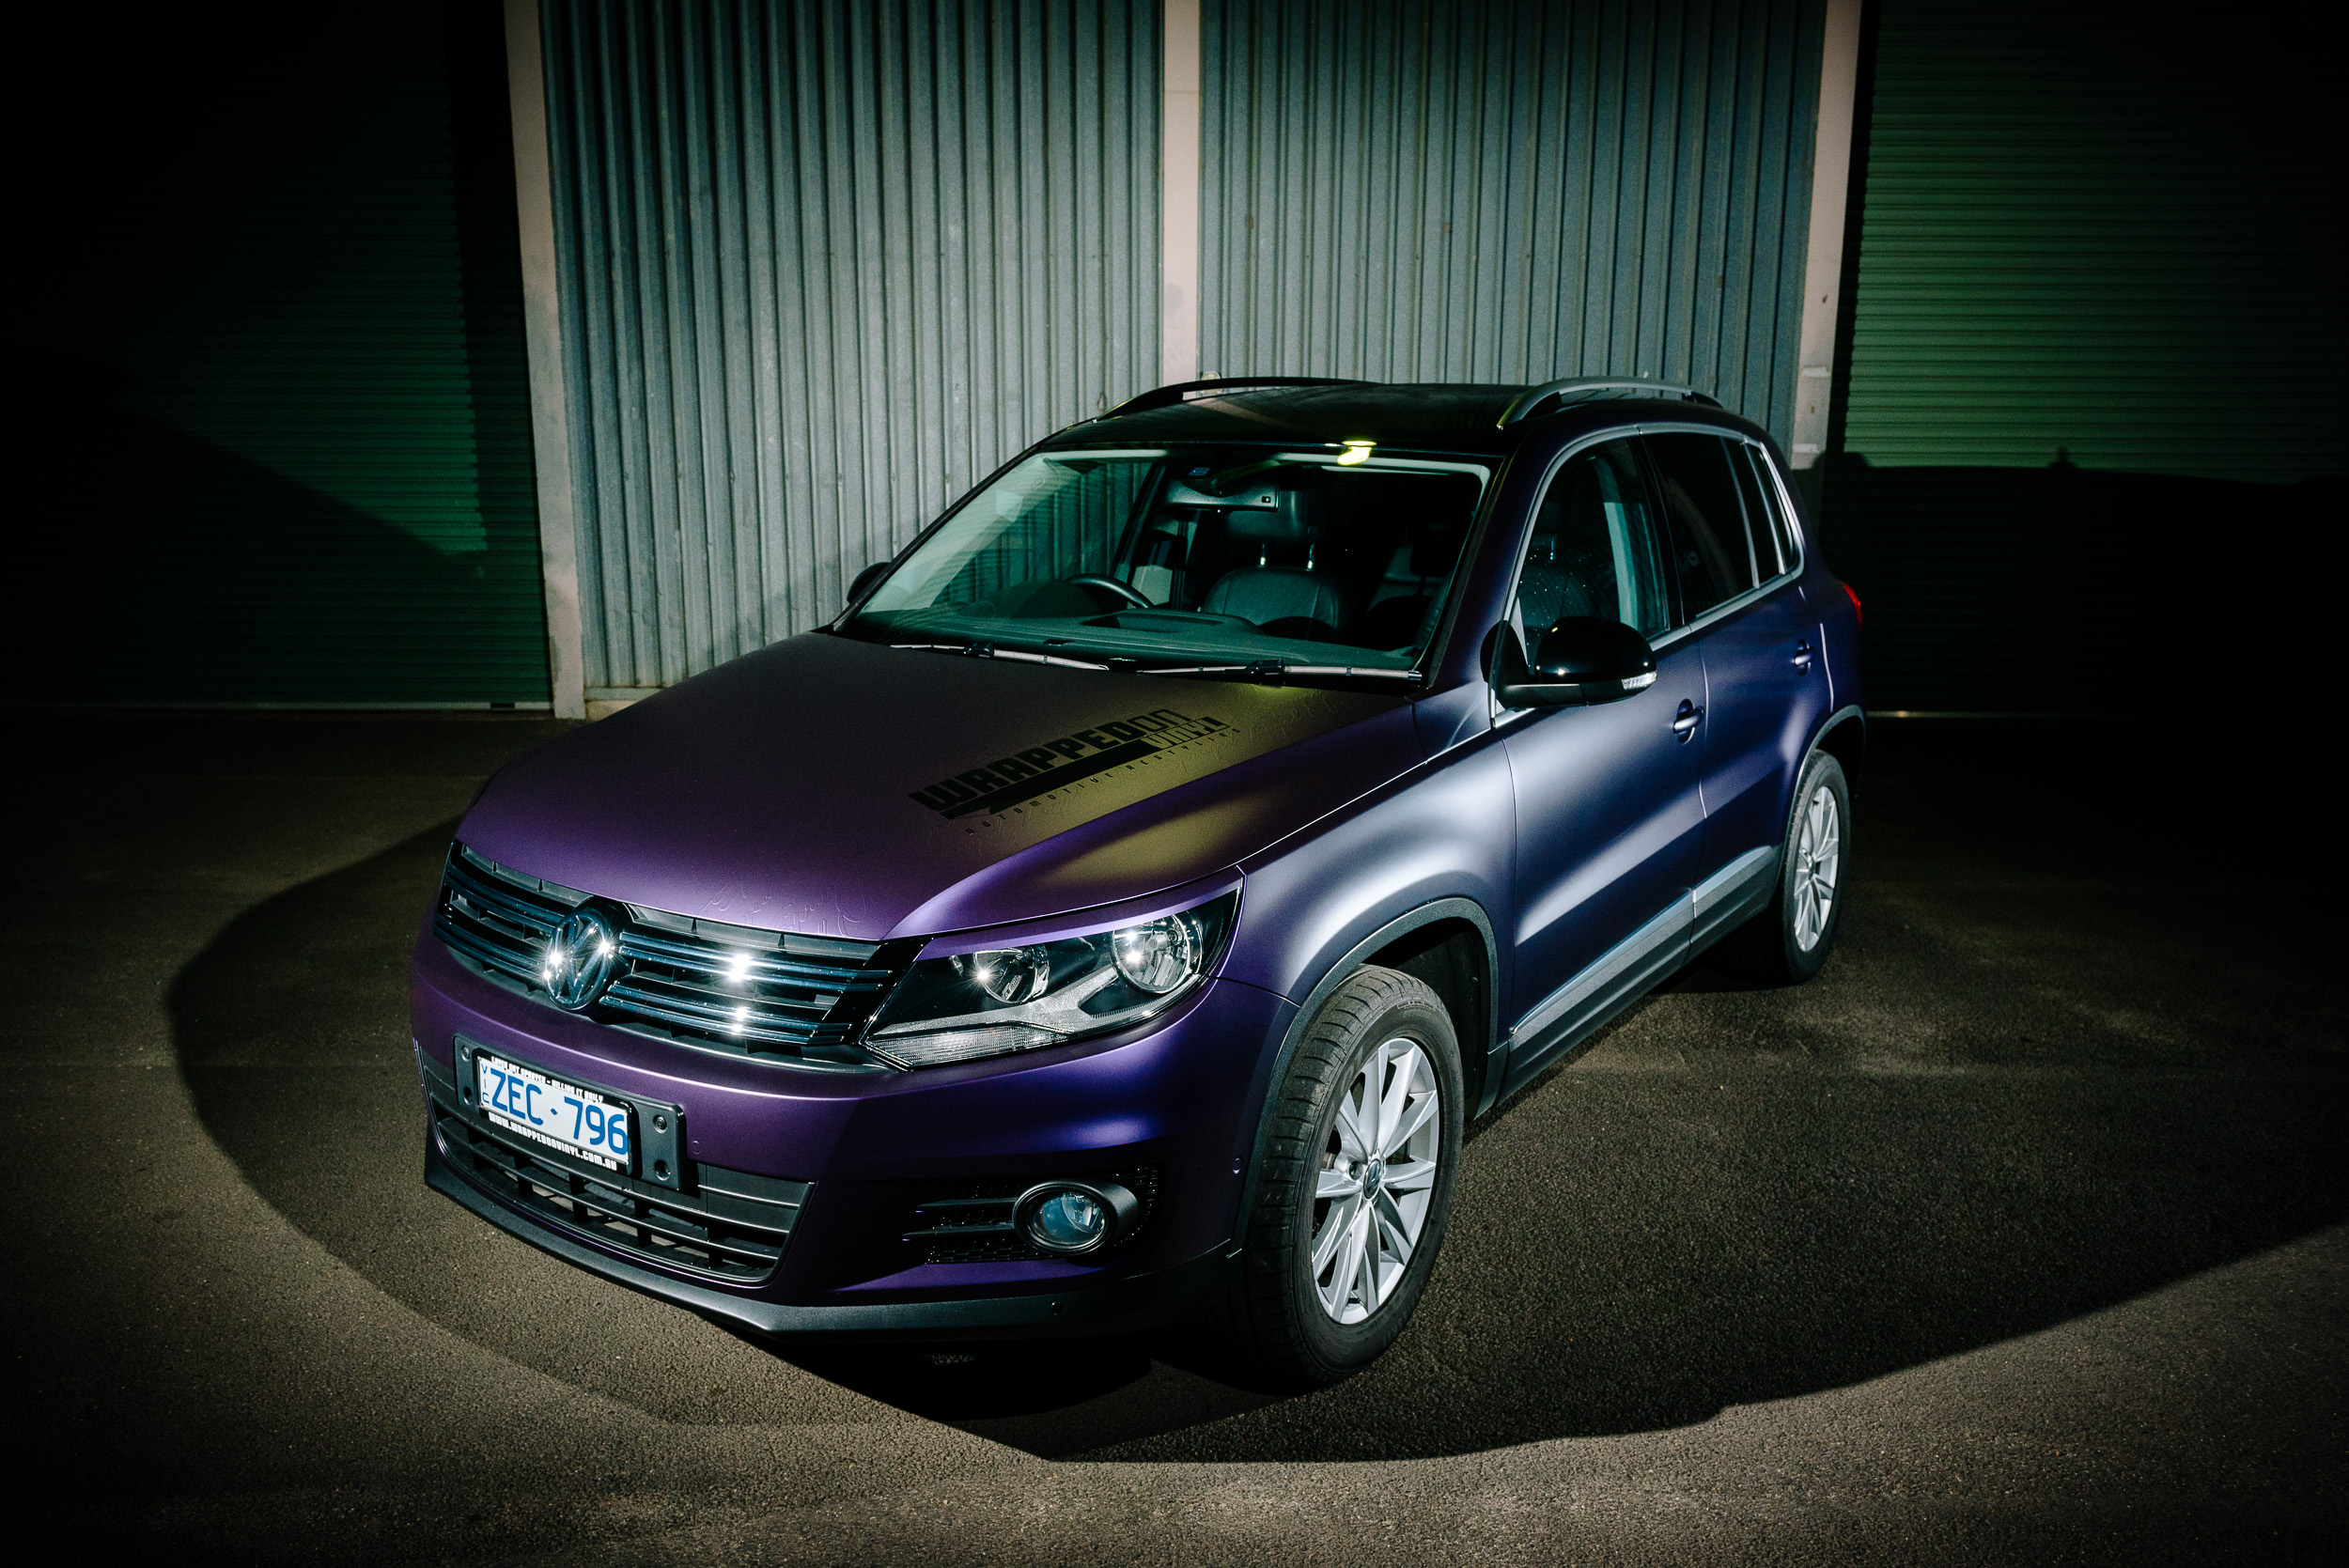 VW Tiguan - KPMF Matte Purple/Black Iridescent — Wrapped on Vinyl Bendigo -  Automotive Paint Protection Film & Colour Change Vinyl Wraps